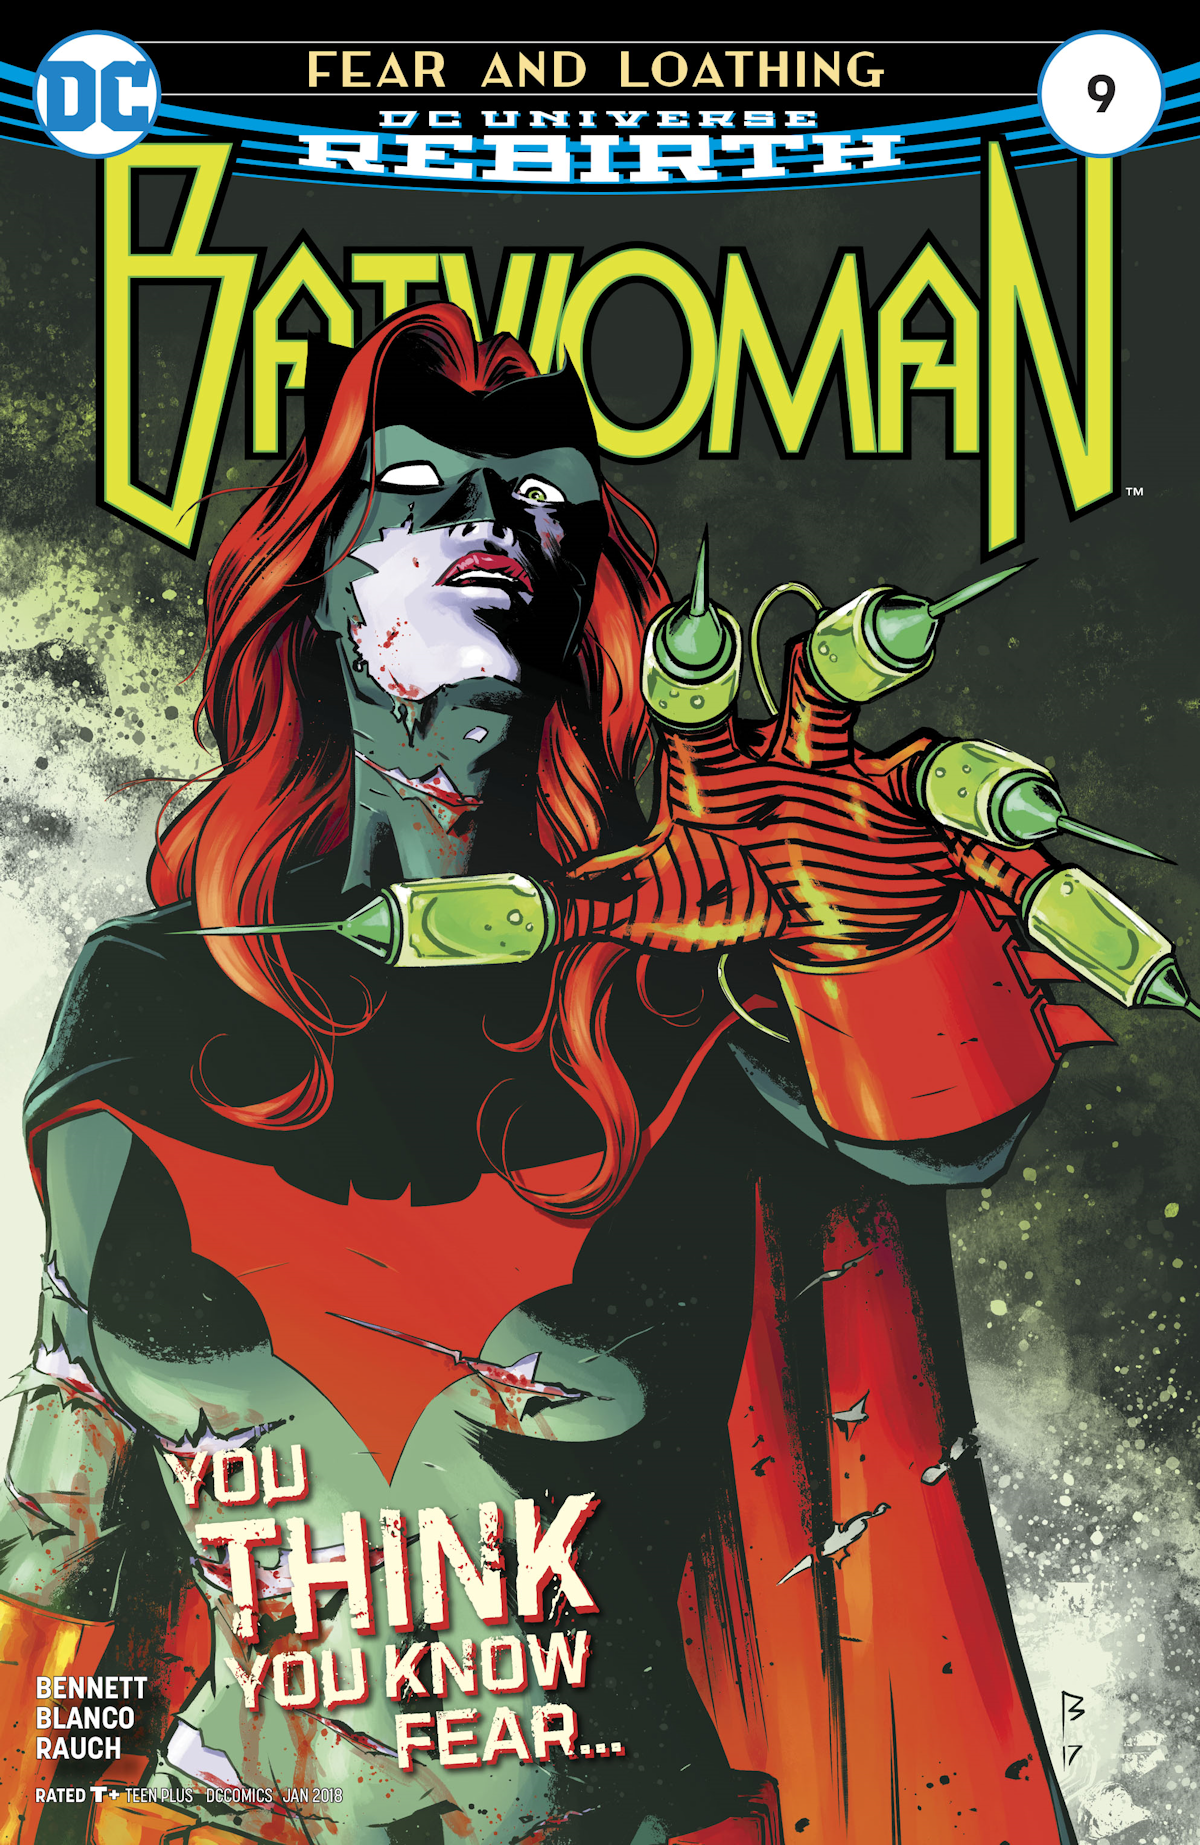 Batwoman Vol. 3 9 (Cover A)